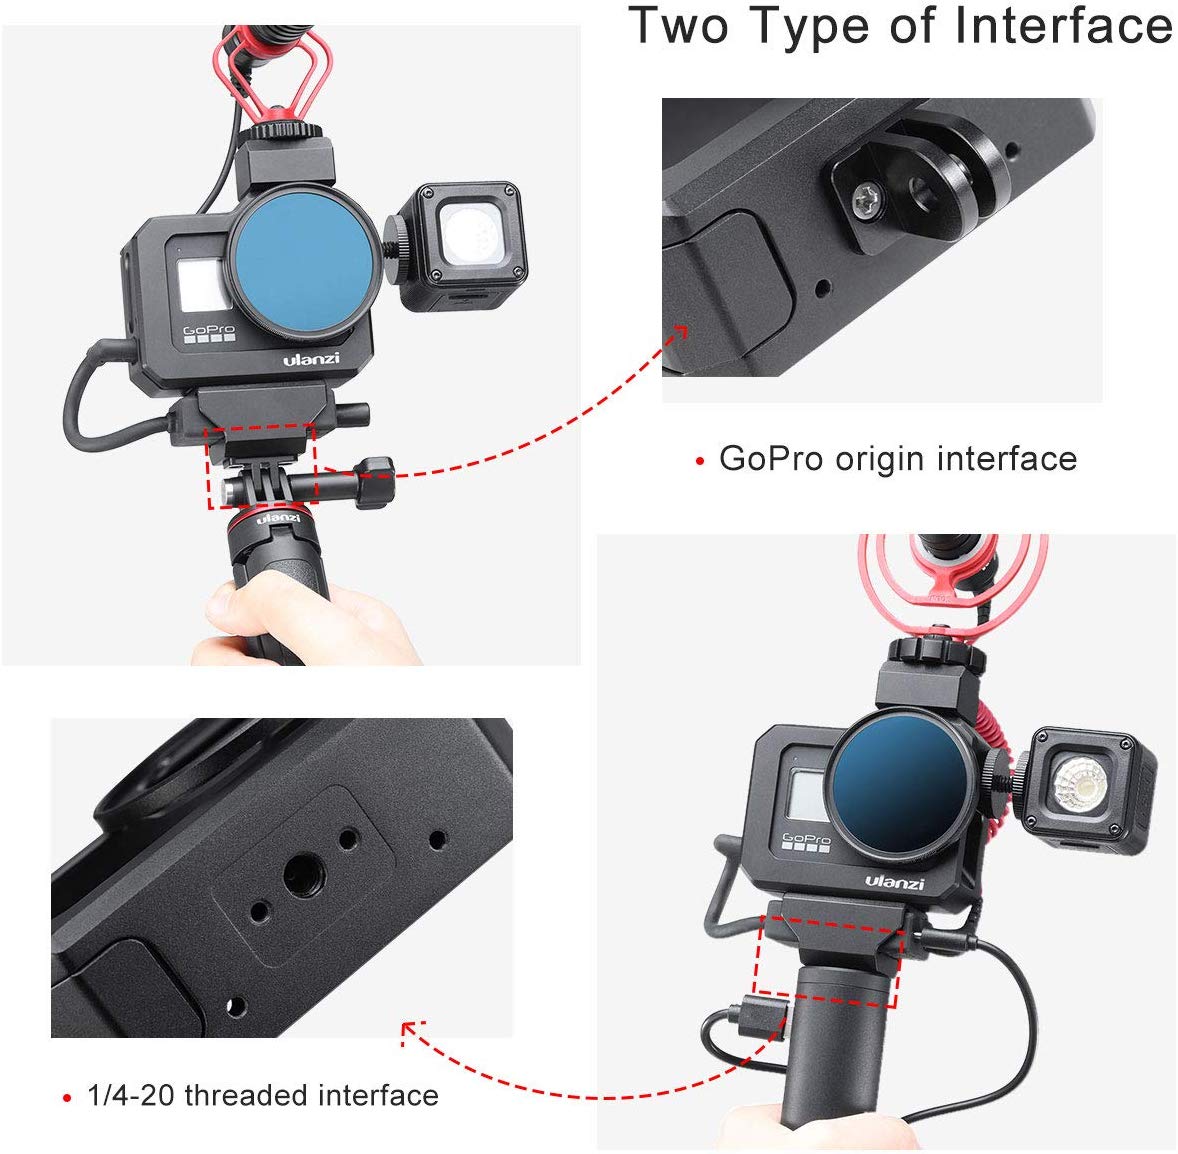 ᐅ • Ulanzi - Cache batterie avec port de chargement pour GoPro Hero 8